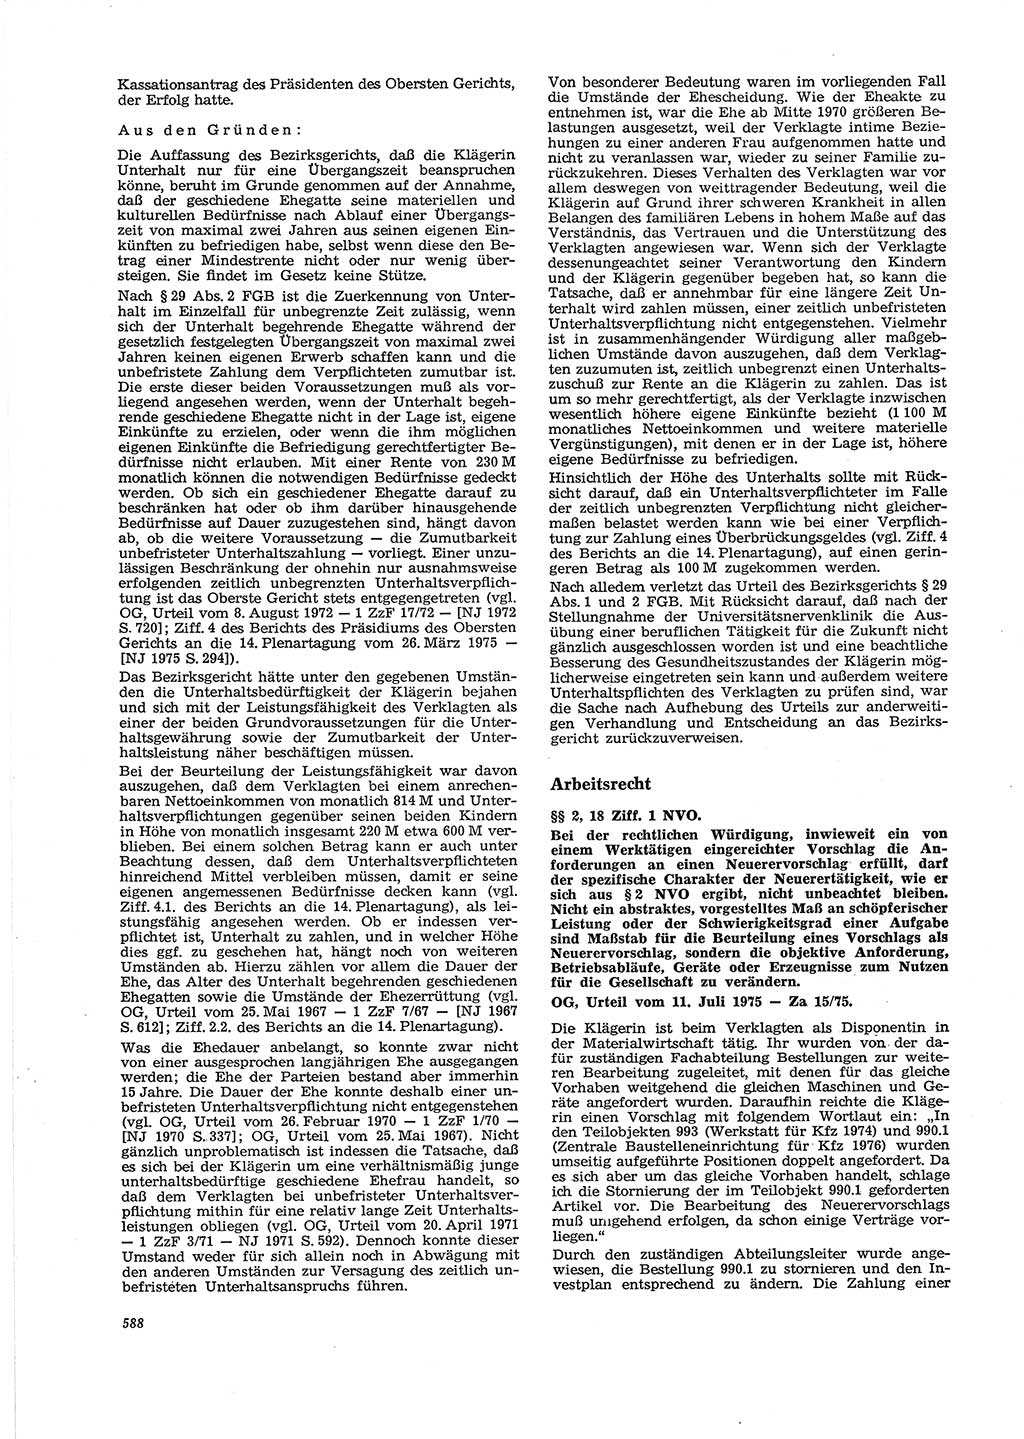 Neue Justiz (NJ), Zeitschrift für Recht und Rechtswissenschaft [Deutsche Demokratische Republik (DDR)], 29. Jahrgang 1975, Seite 588 (NJ DDR 1975, S. 588)